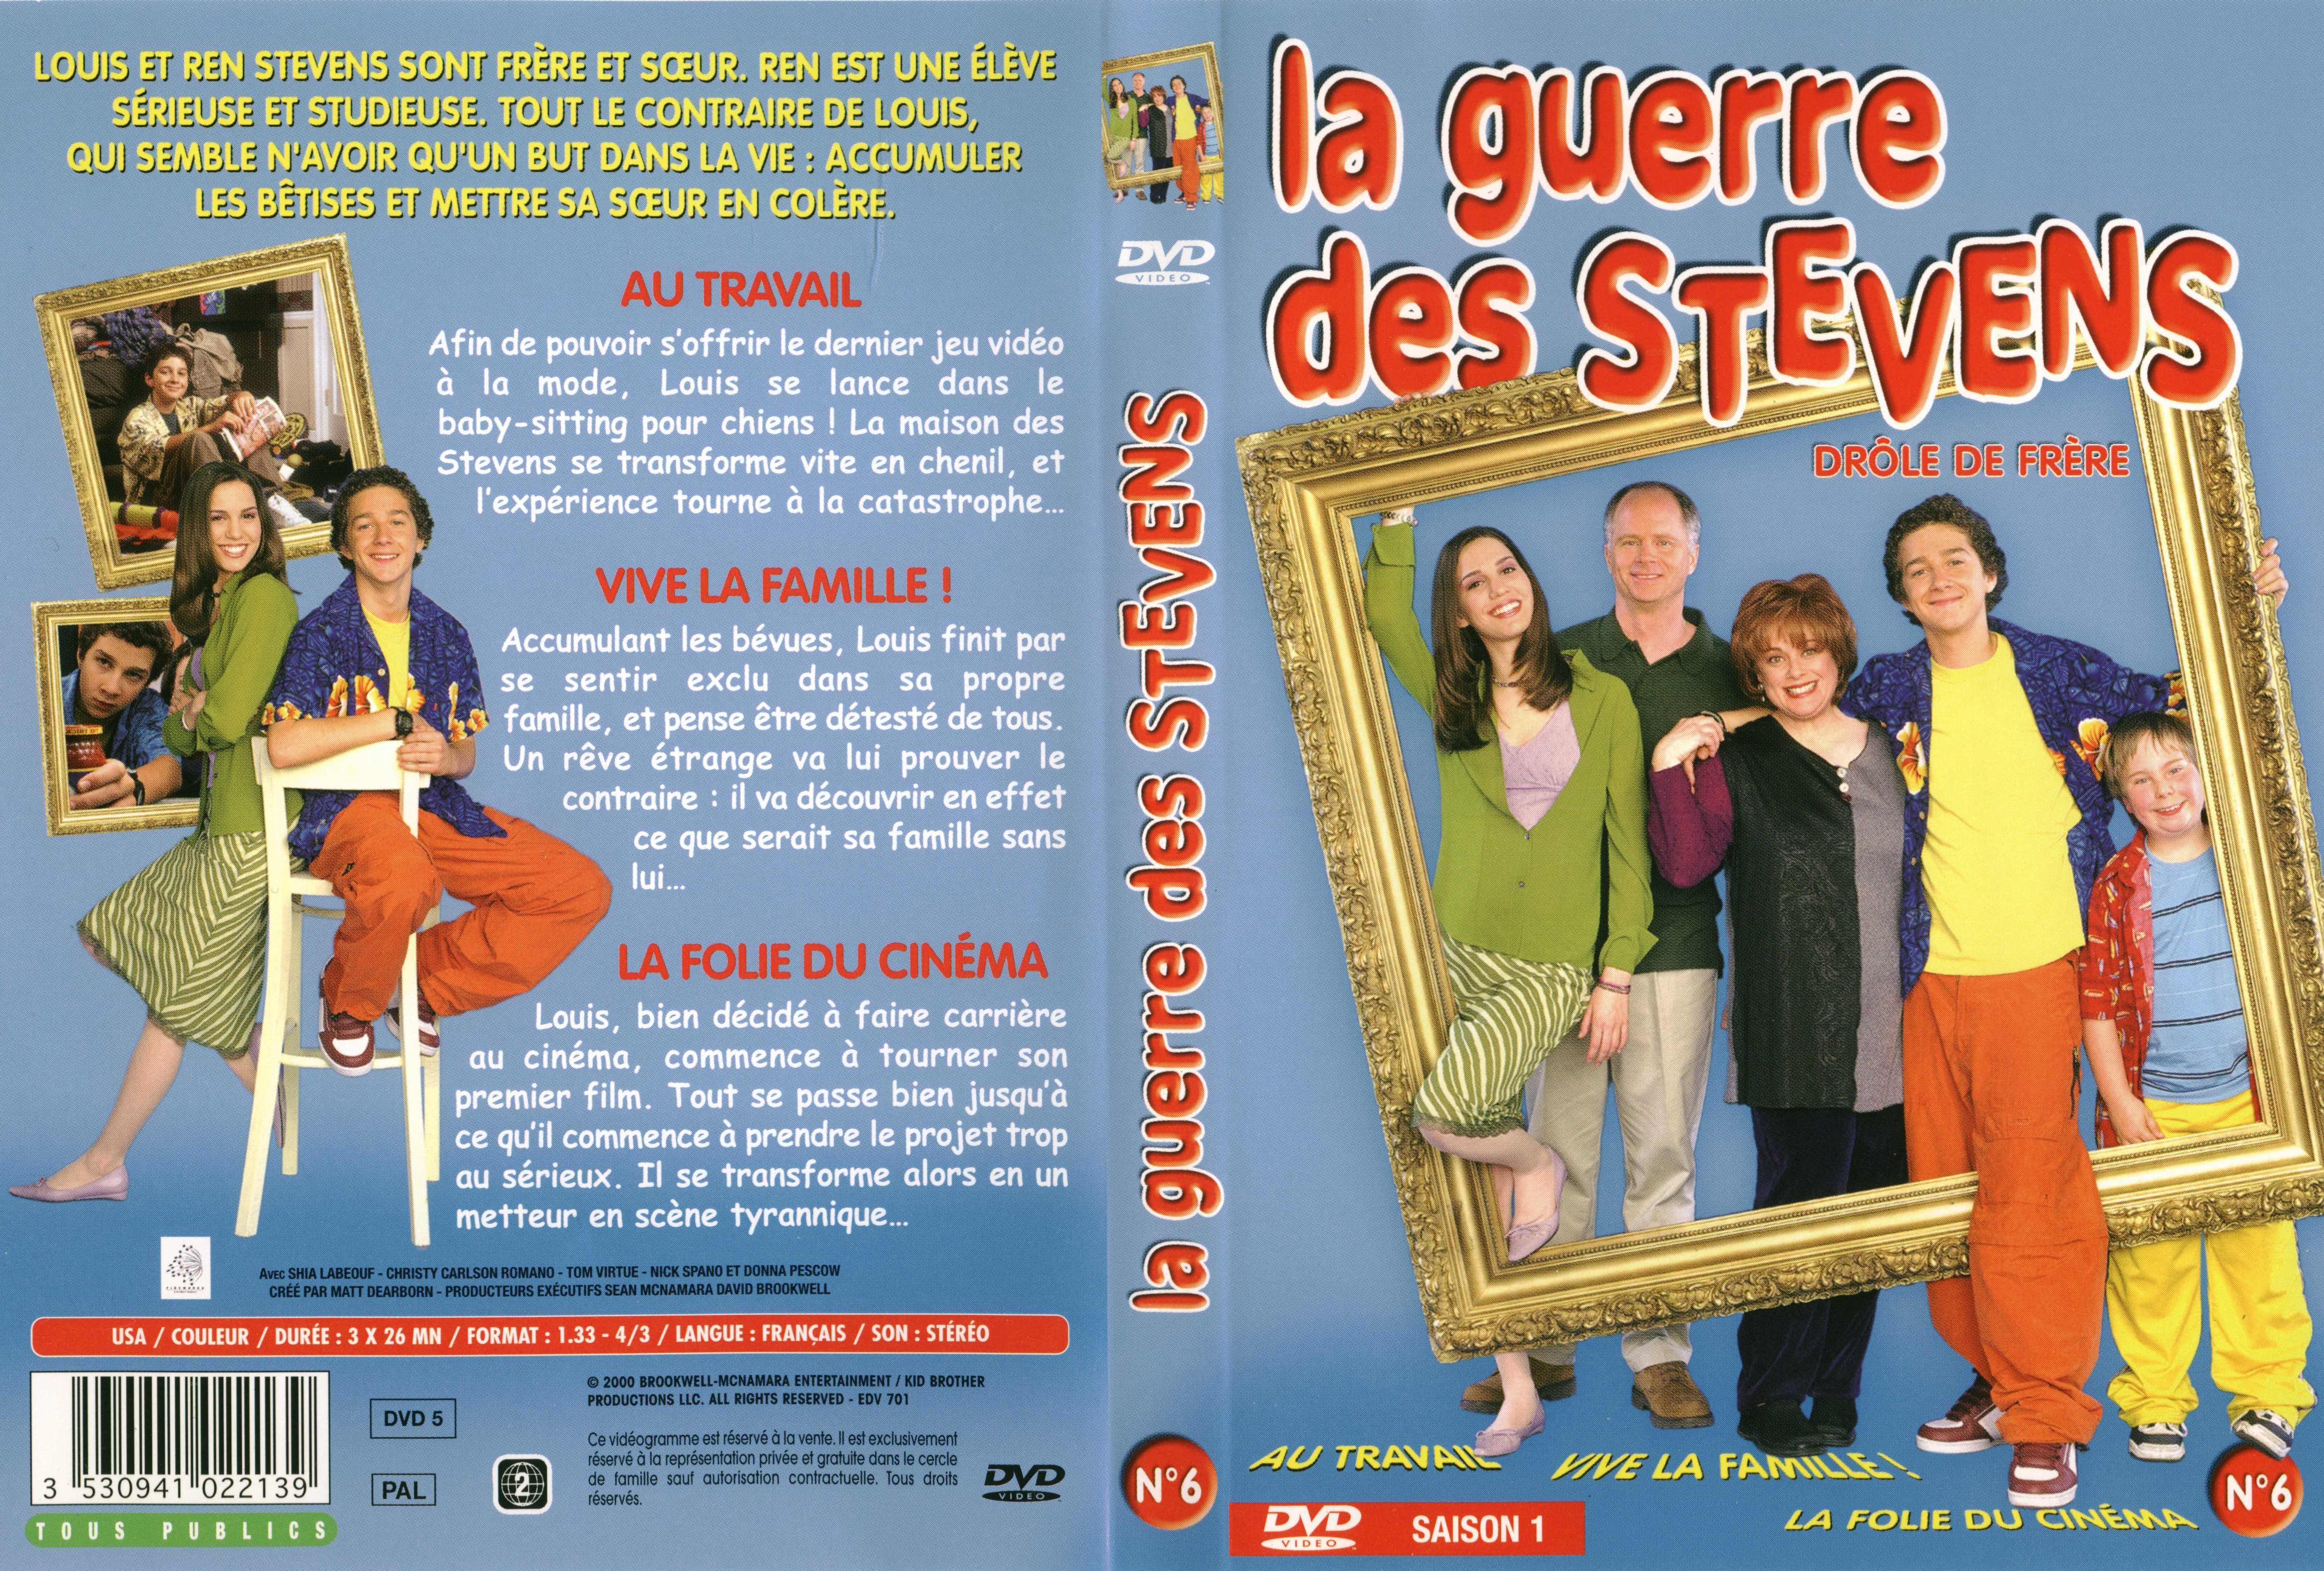 Jaquette DVD La guerre des Stevens Saison 1 DVD 6